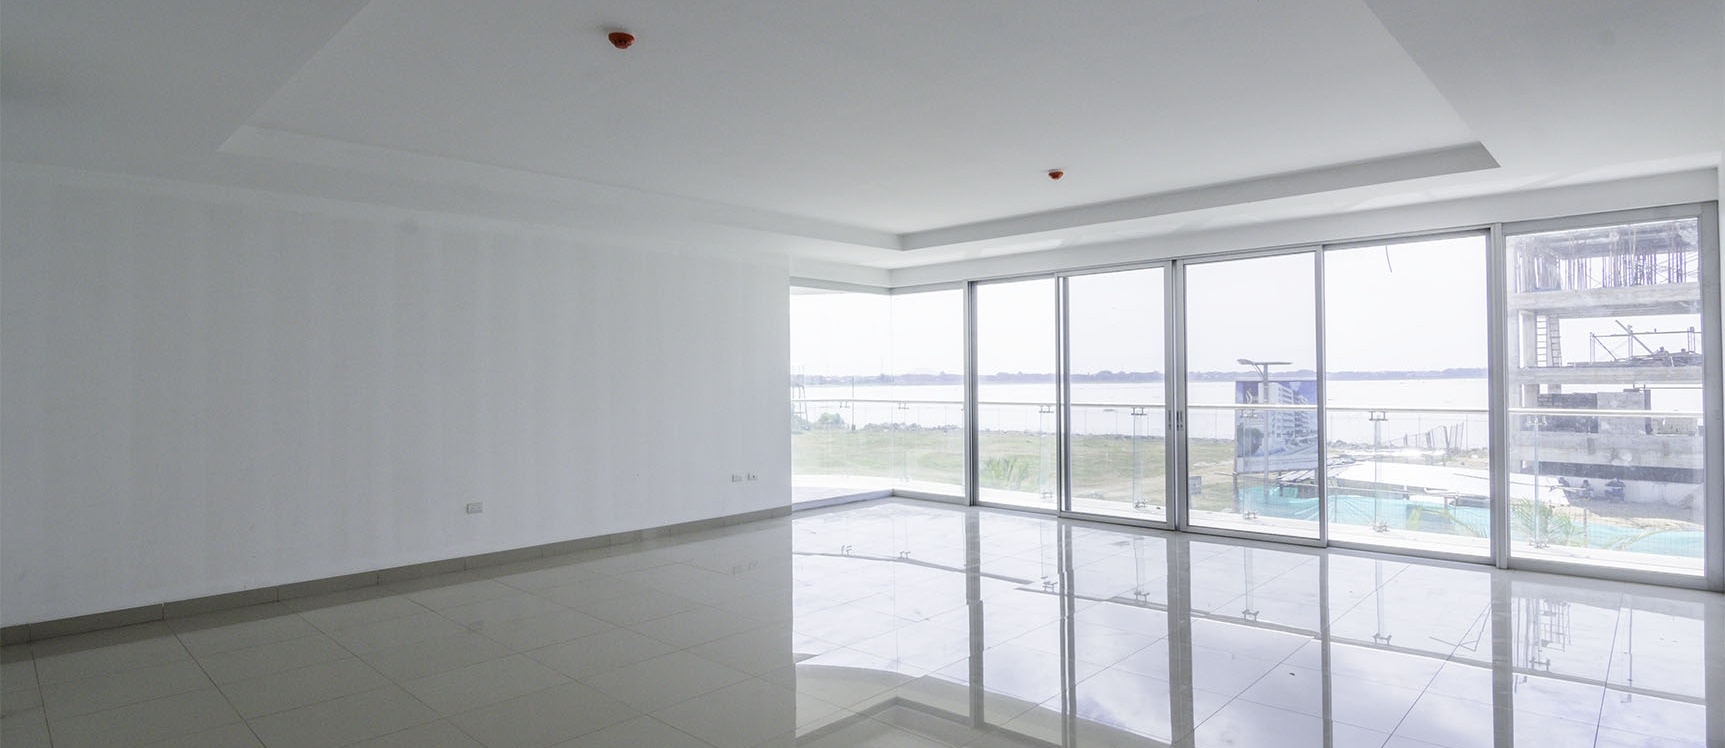 GeoBienes - Departamento en venta en la Isla Mocolí - Urbanización Dubái, Vía Samborondón - Plusvalia Guayaquil Casas de venta y alquiler Inmobiliaria Ecuador